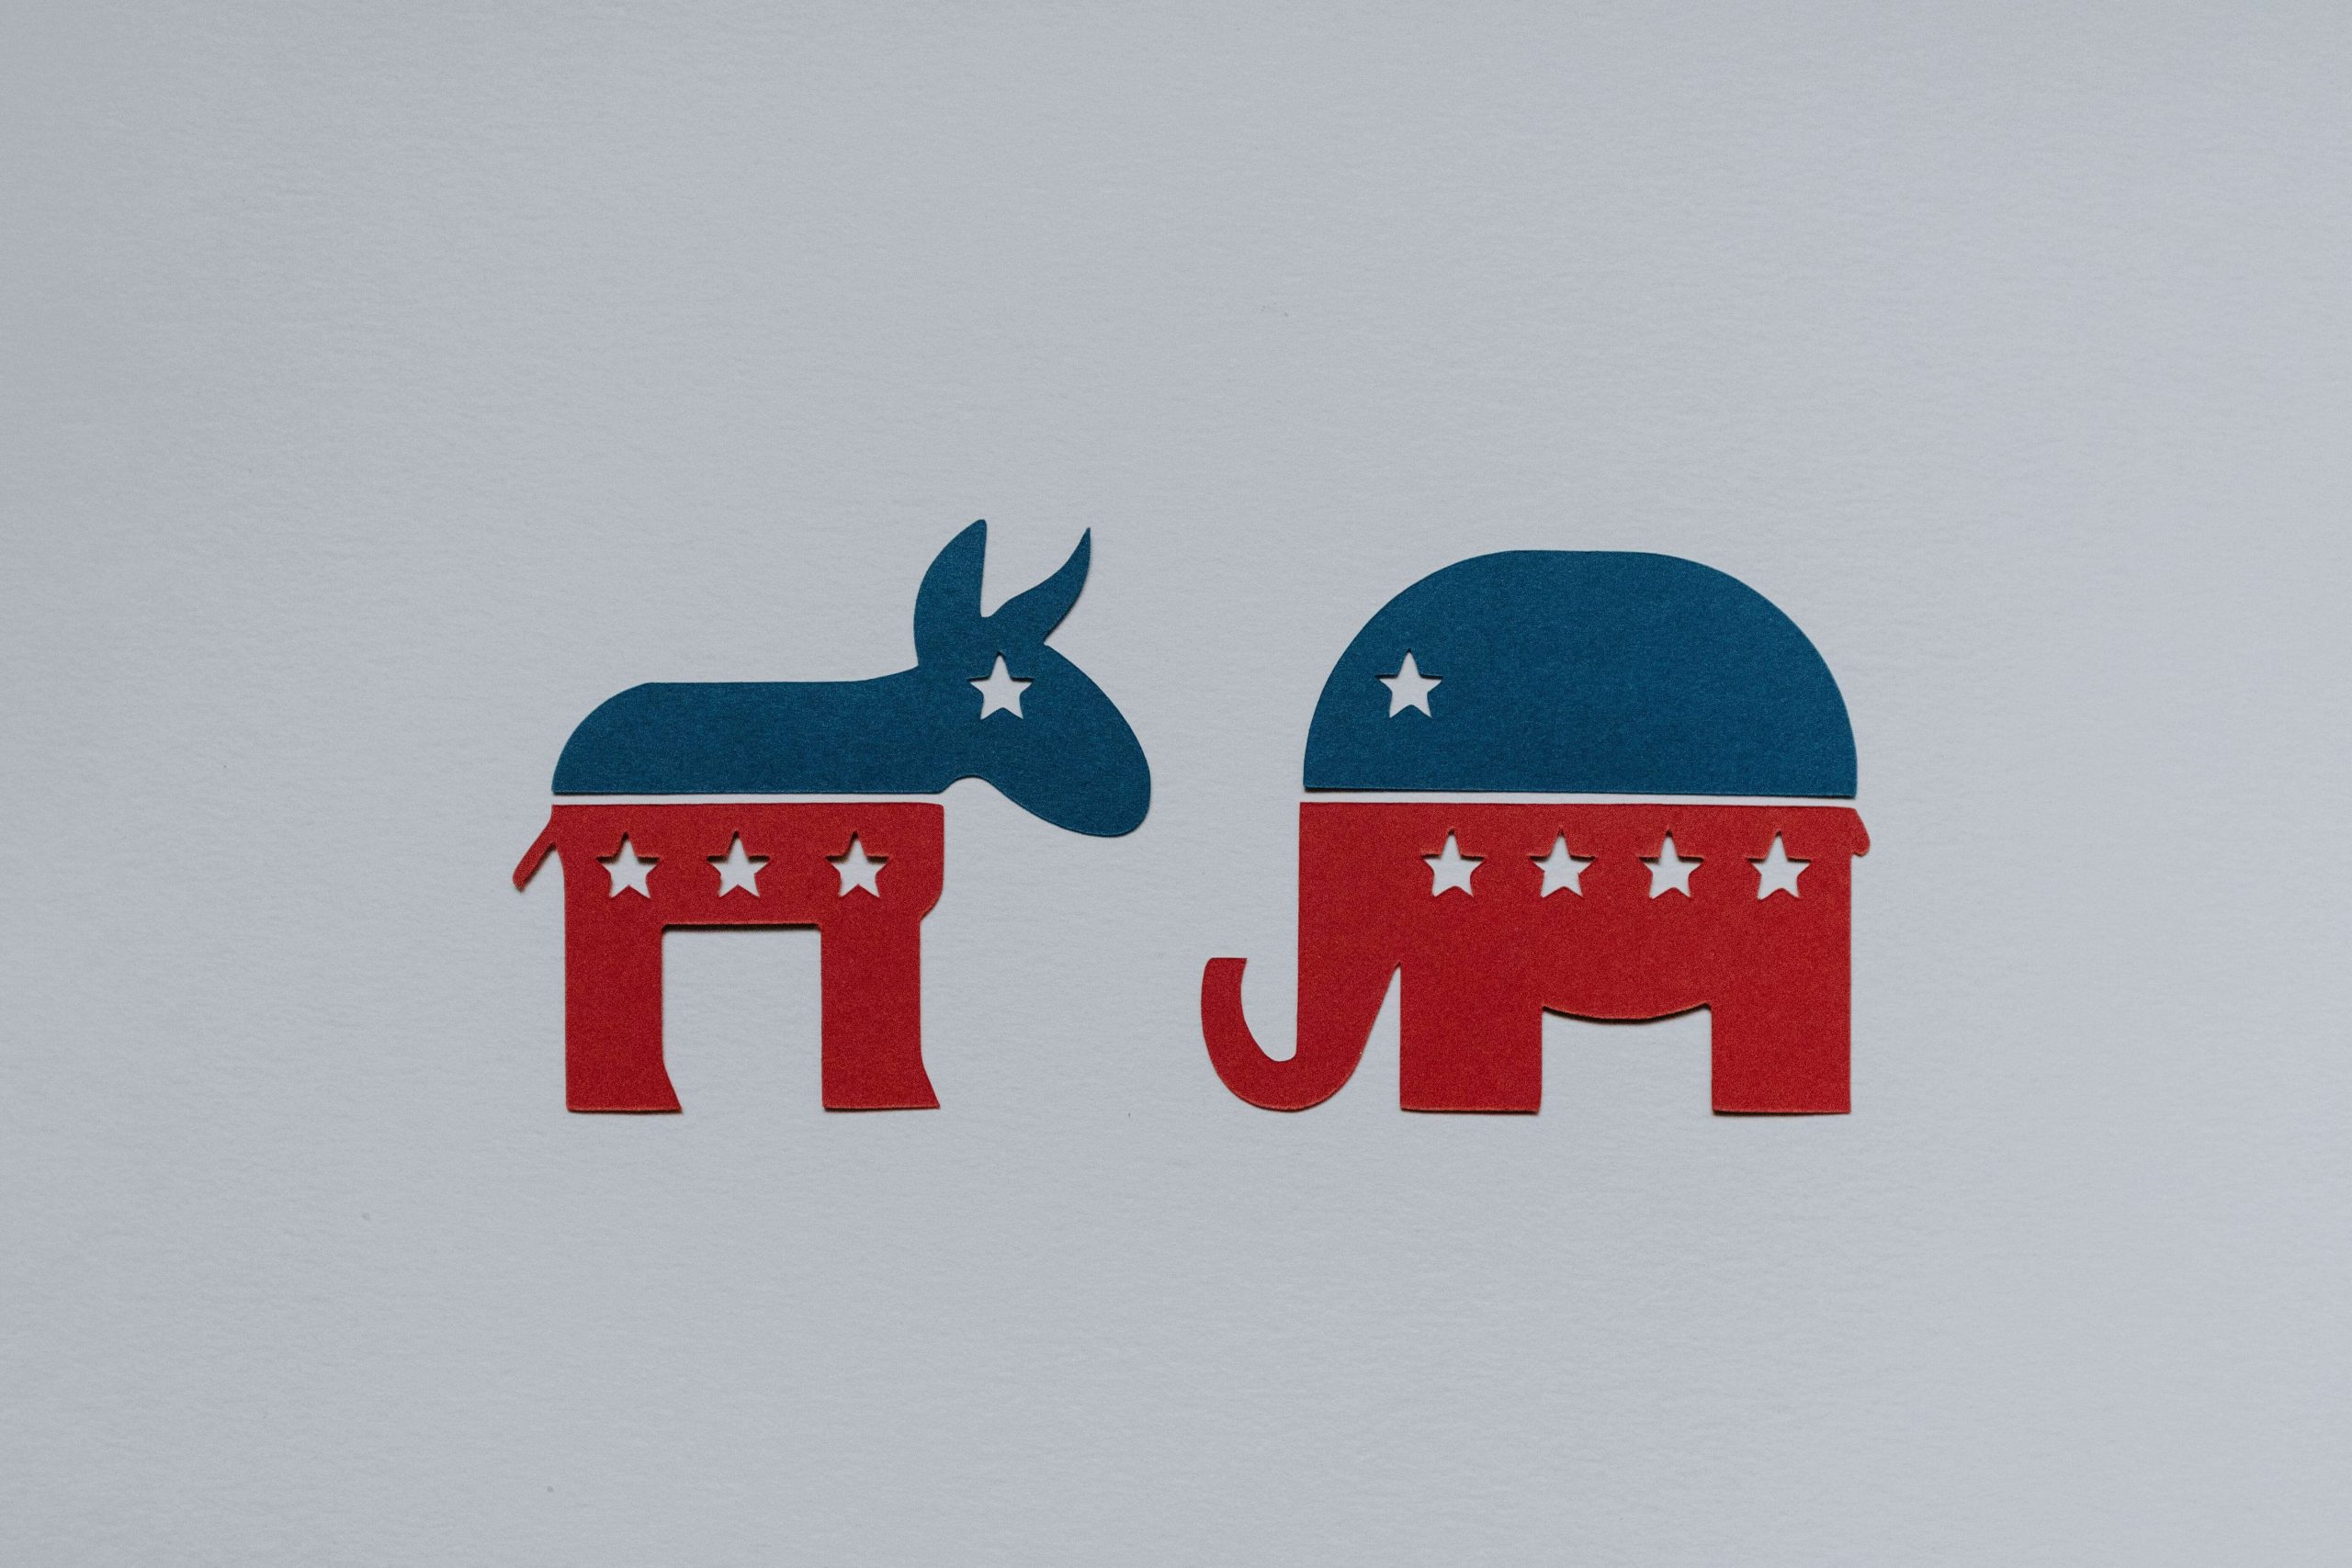 Symbols of Democratic and Republican party.